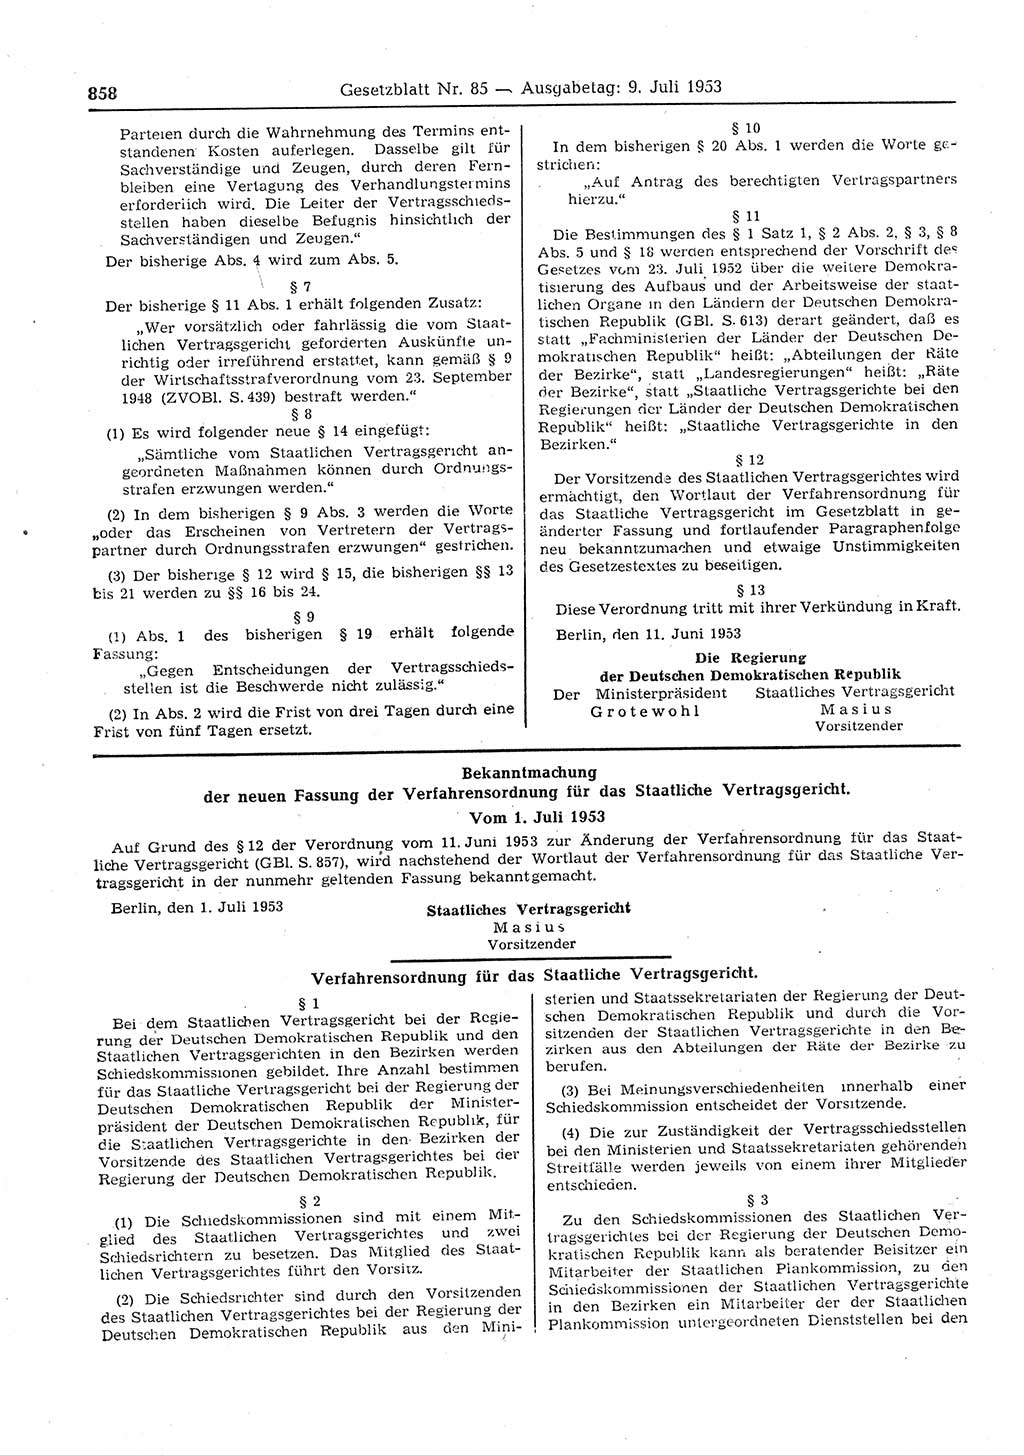 Gesetzblatt (GBl.) der Deutschen Demokratischen Republik (DDR) 1953, Seite 858 (GBl. DDR 1953, S. 858)